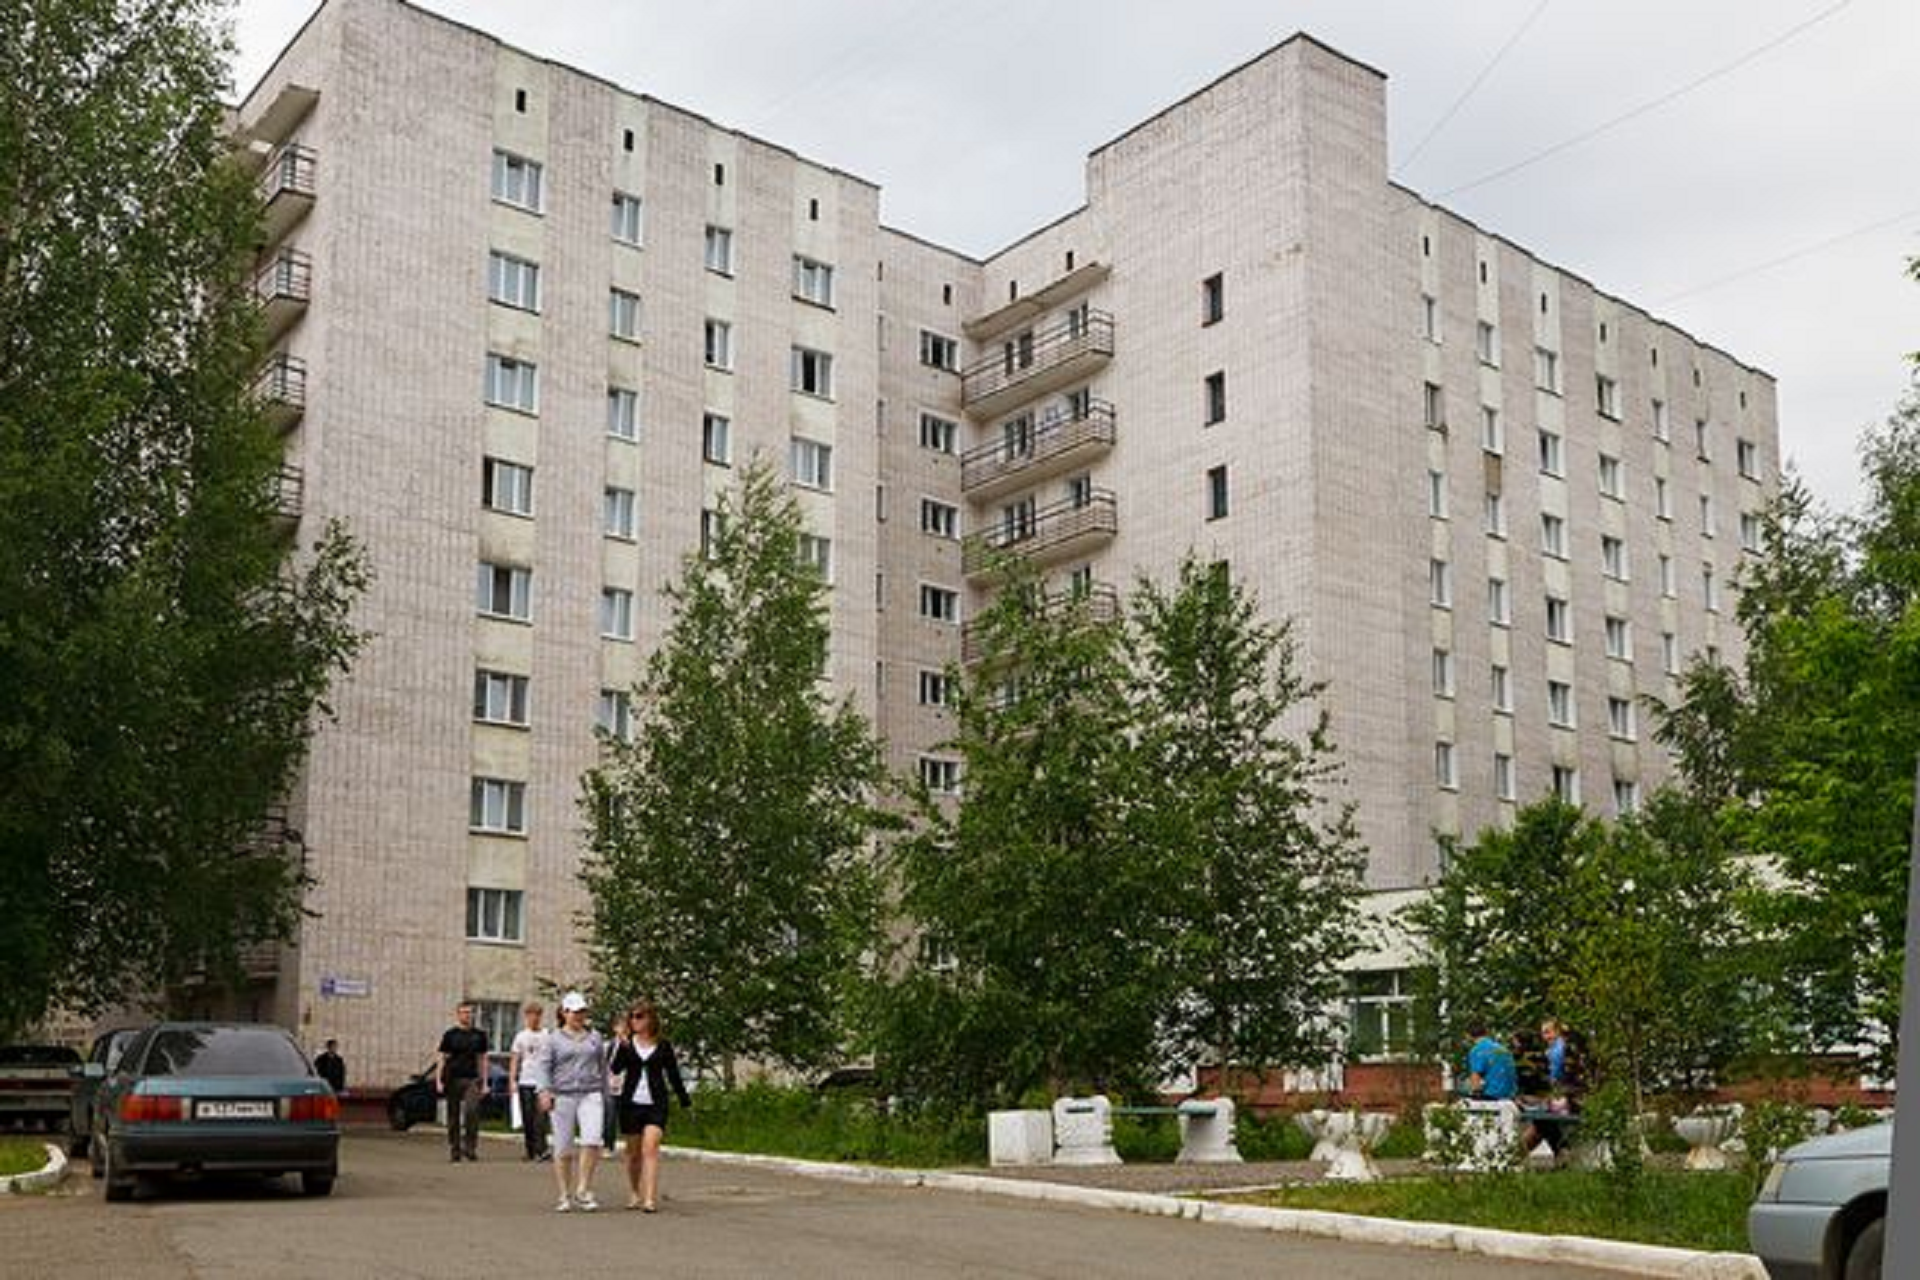 Студентам, выехавшим временно из общежитий, не придется платить за проживание